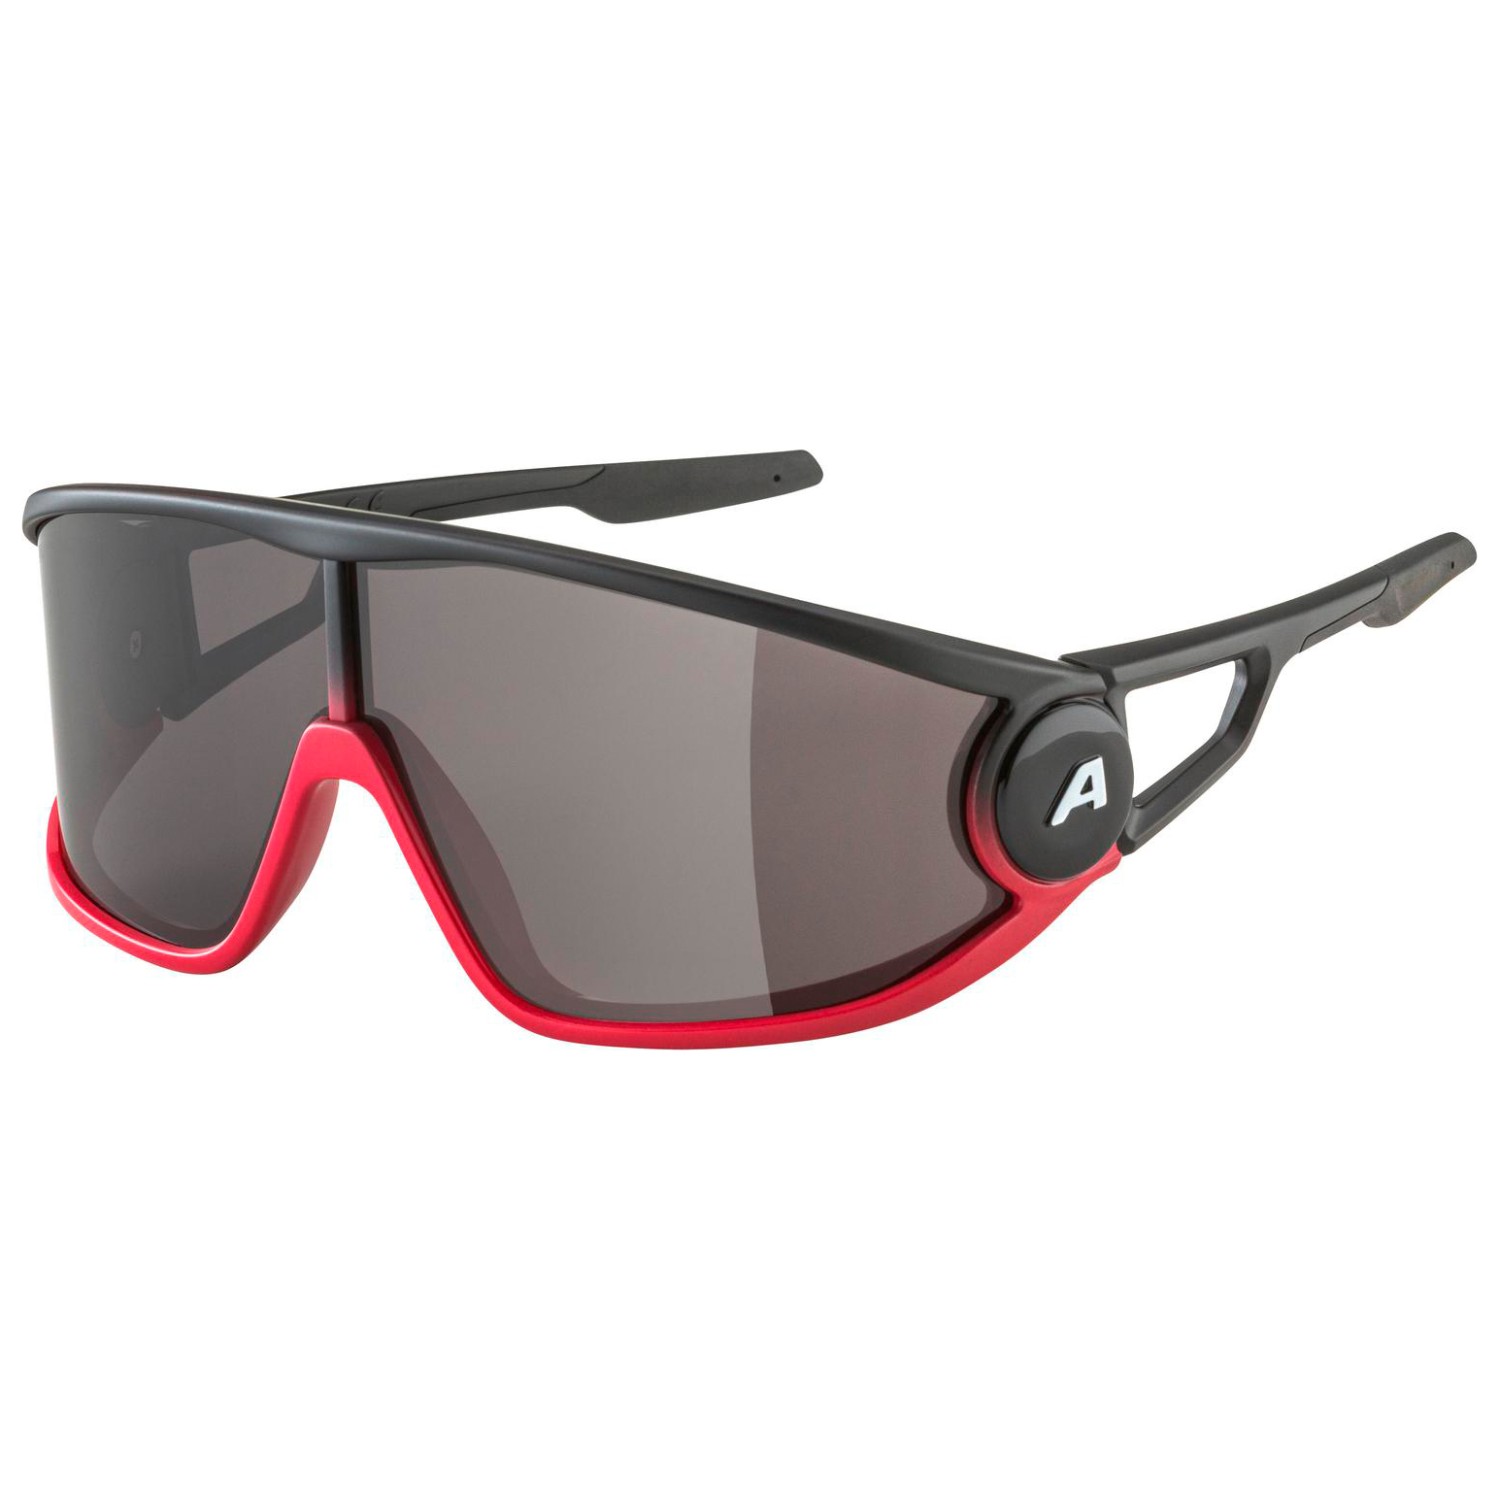 Солнцезащитные очки Alpina Legend Cat 3, цвет Black/Red Matt очки солнцезащитные alpina luzy белый пурпурный зеркальный a8571310